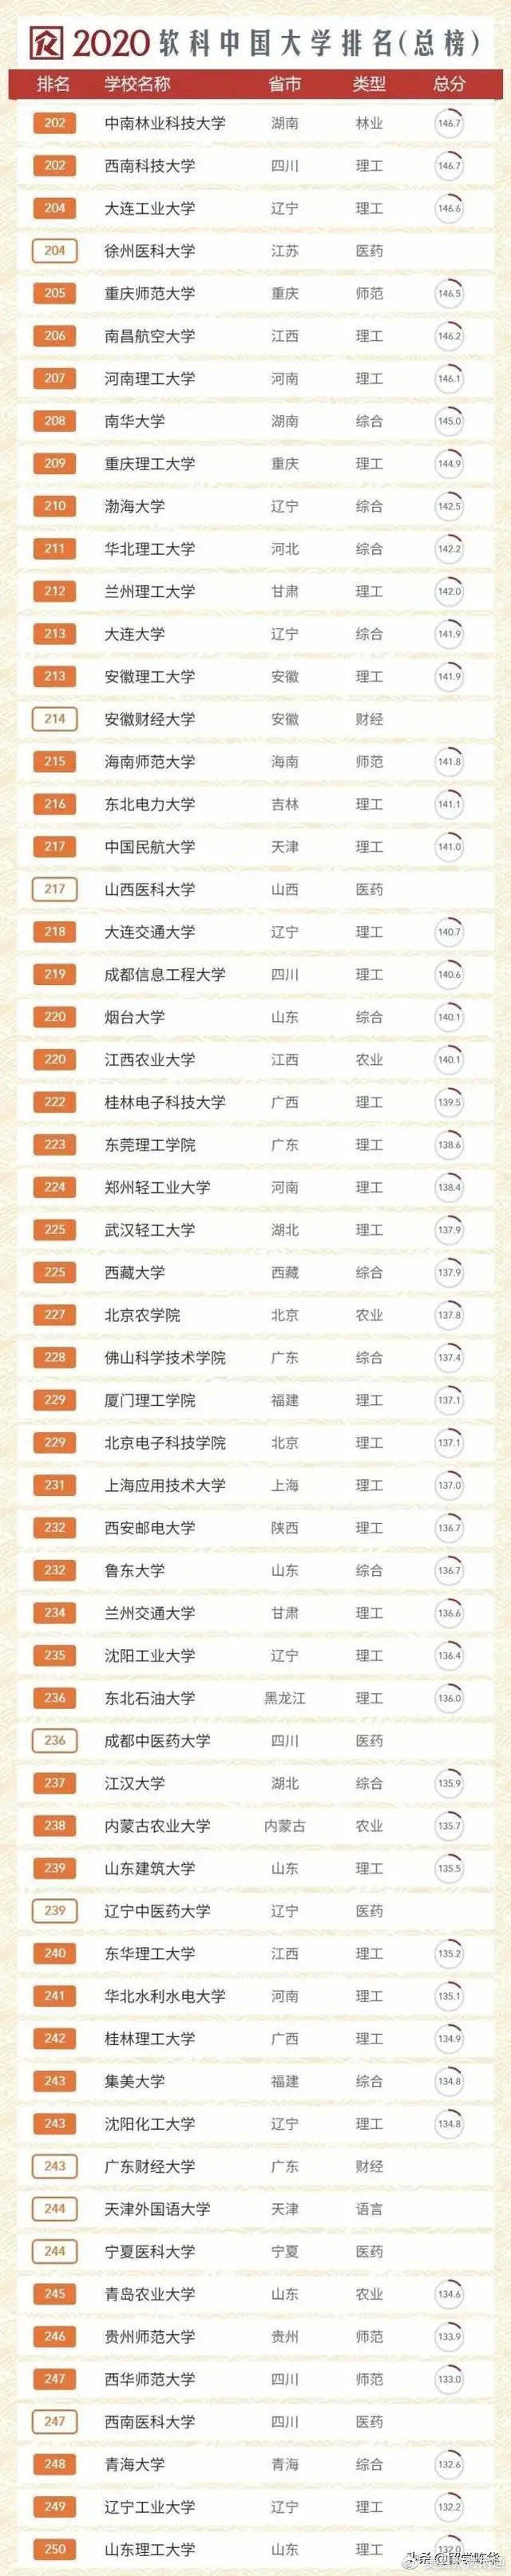 2020年中国大学排名_2020中国最好大学排名新鲜公布,武汉大学挺进前10强